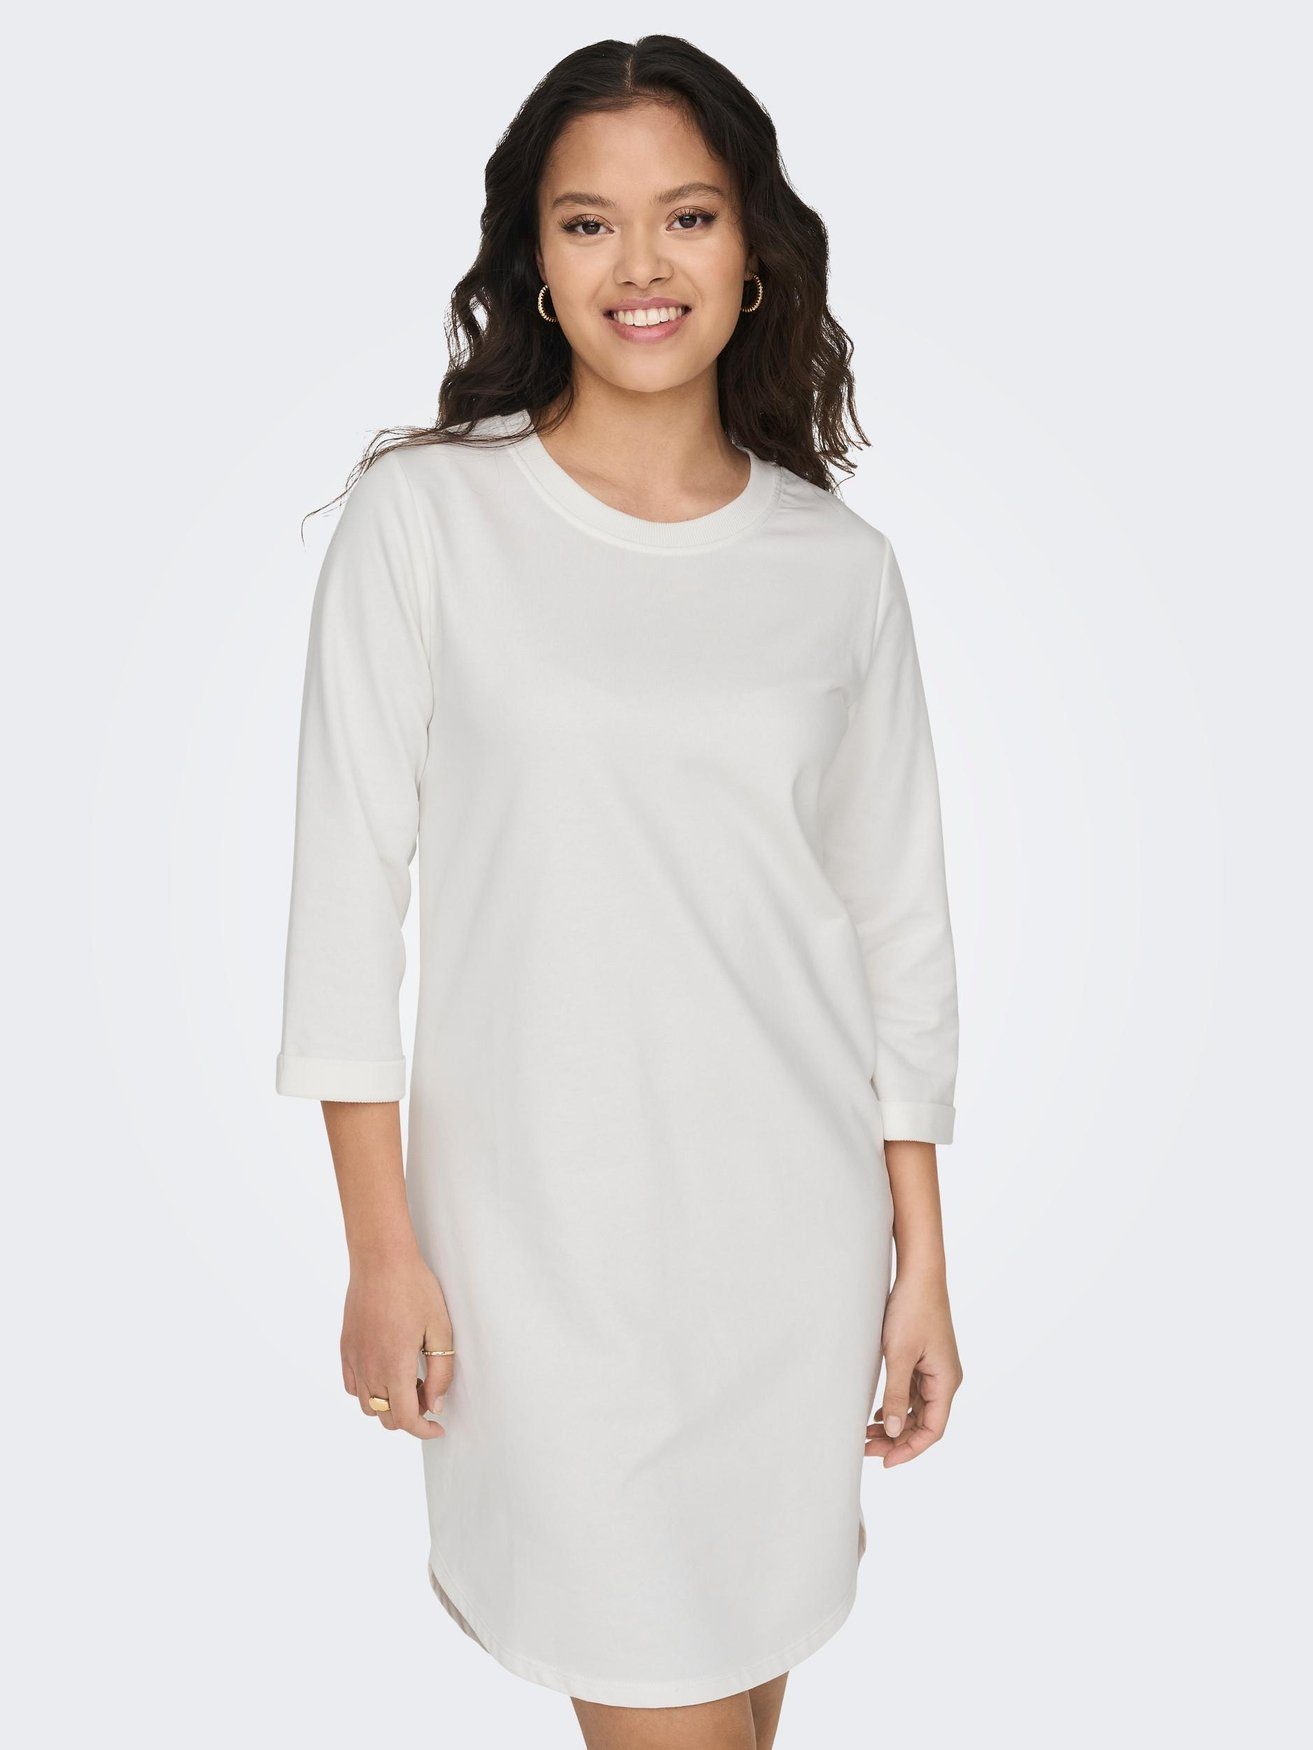 Weiß-3 Kleid in JDYIVY Sweat JACQUELINE (knielang) Shirtkleid 3/4 de Arm Rundhals YONG 5608